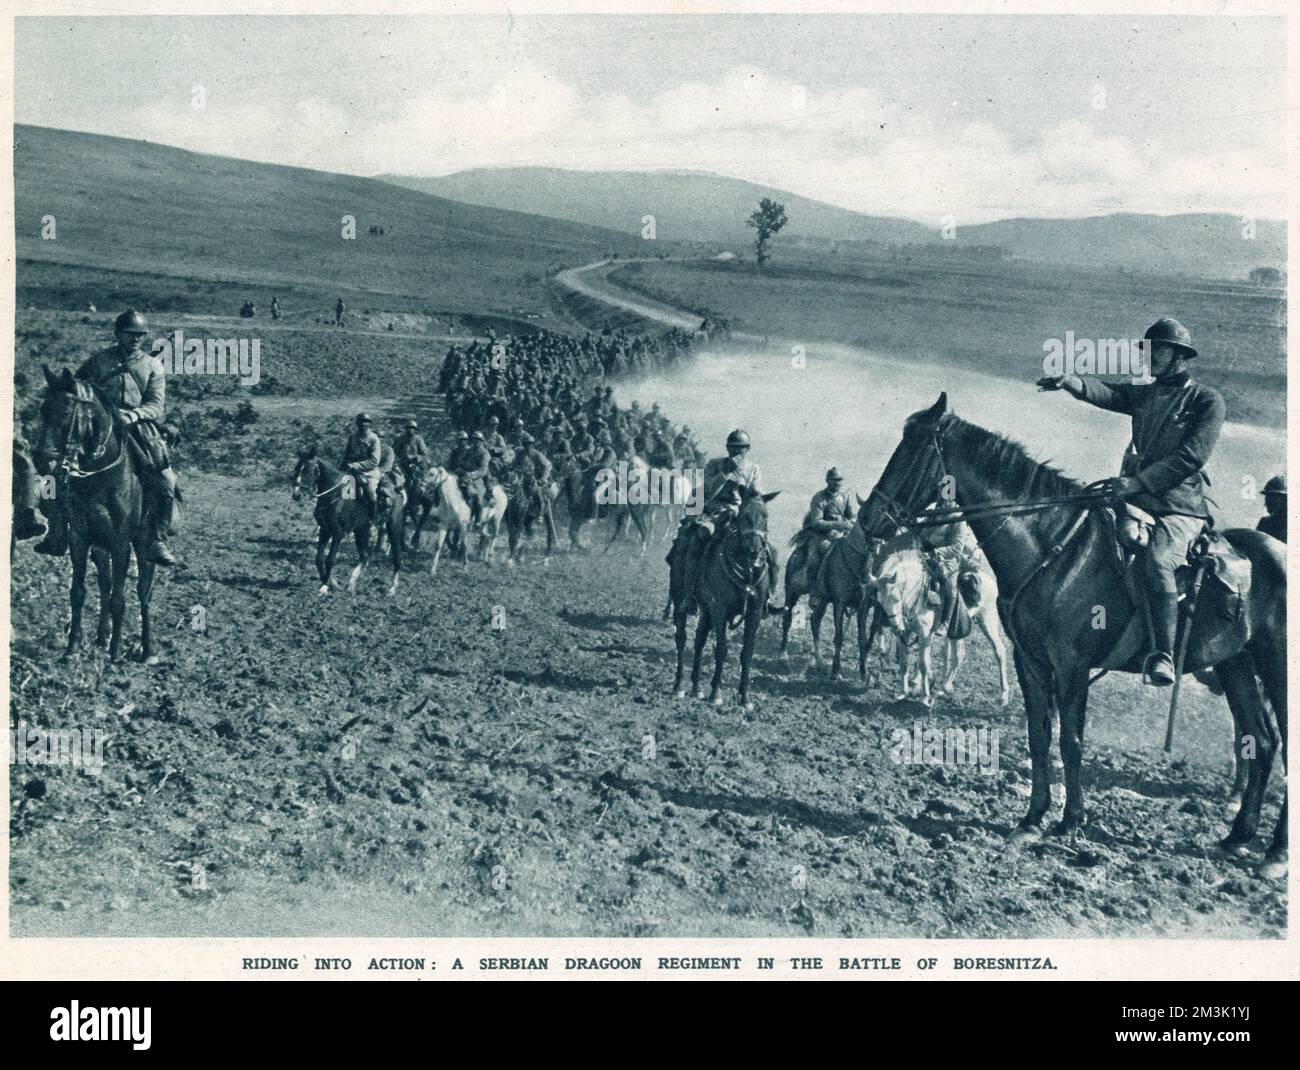 Ein serbisches Dragoon-Regiment, das Teil der alliierten Armee im griechischen Hafen von Salonika ist, reitet, um einen Angriff der bulgarischen Armee vom Oktober 1916 abzuwehren. Zu Beginn des Krieges hatte die serbische Armee der Invasion des österreichisch-ungarischen Reiches erfolgreich widerstanden, aber eine gemeinsame Offensive der Zentralmächte, einschließlich des neuen Bündnisses Bulgarien, zwang die serbische Regierung und Armee, im Dezember 1915 in das benachbarte Albanien zu fliehen und ins Exil zu gehen. Stockfoto